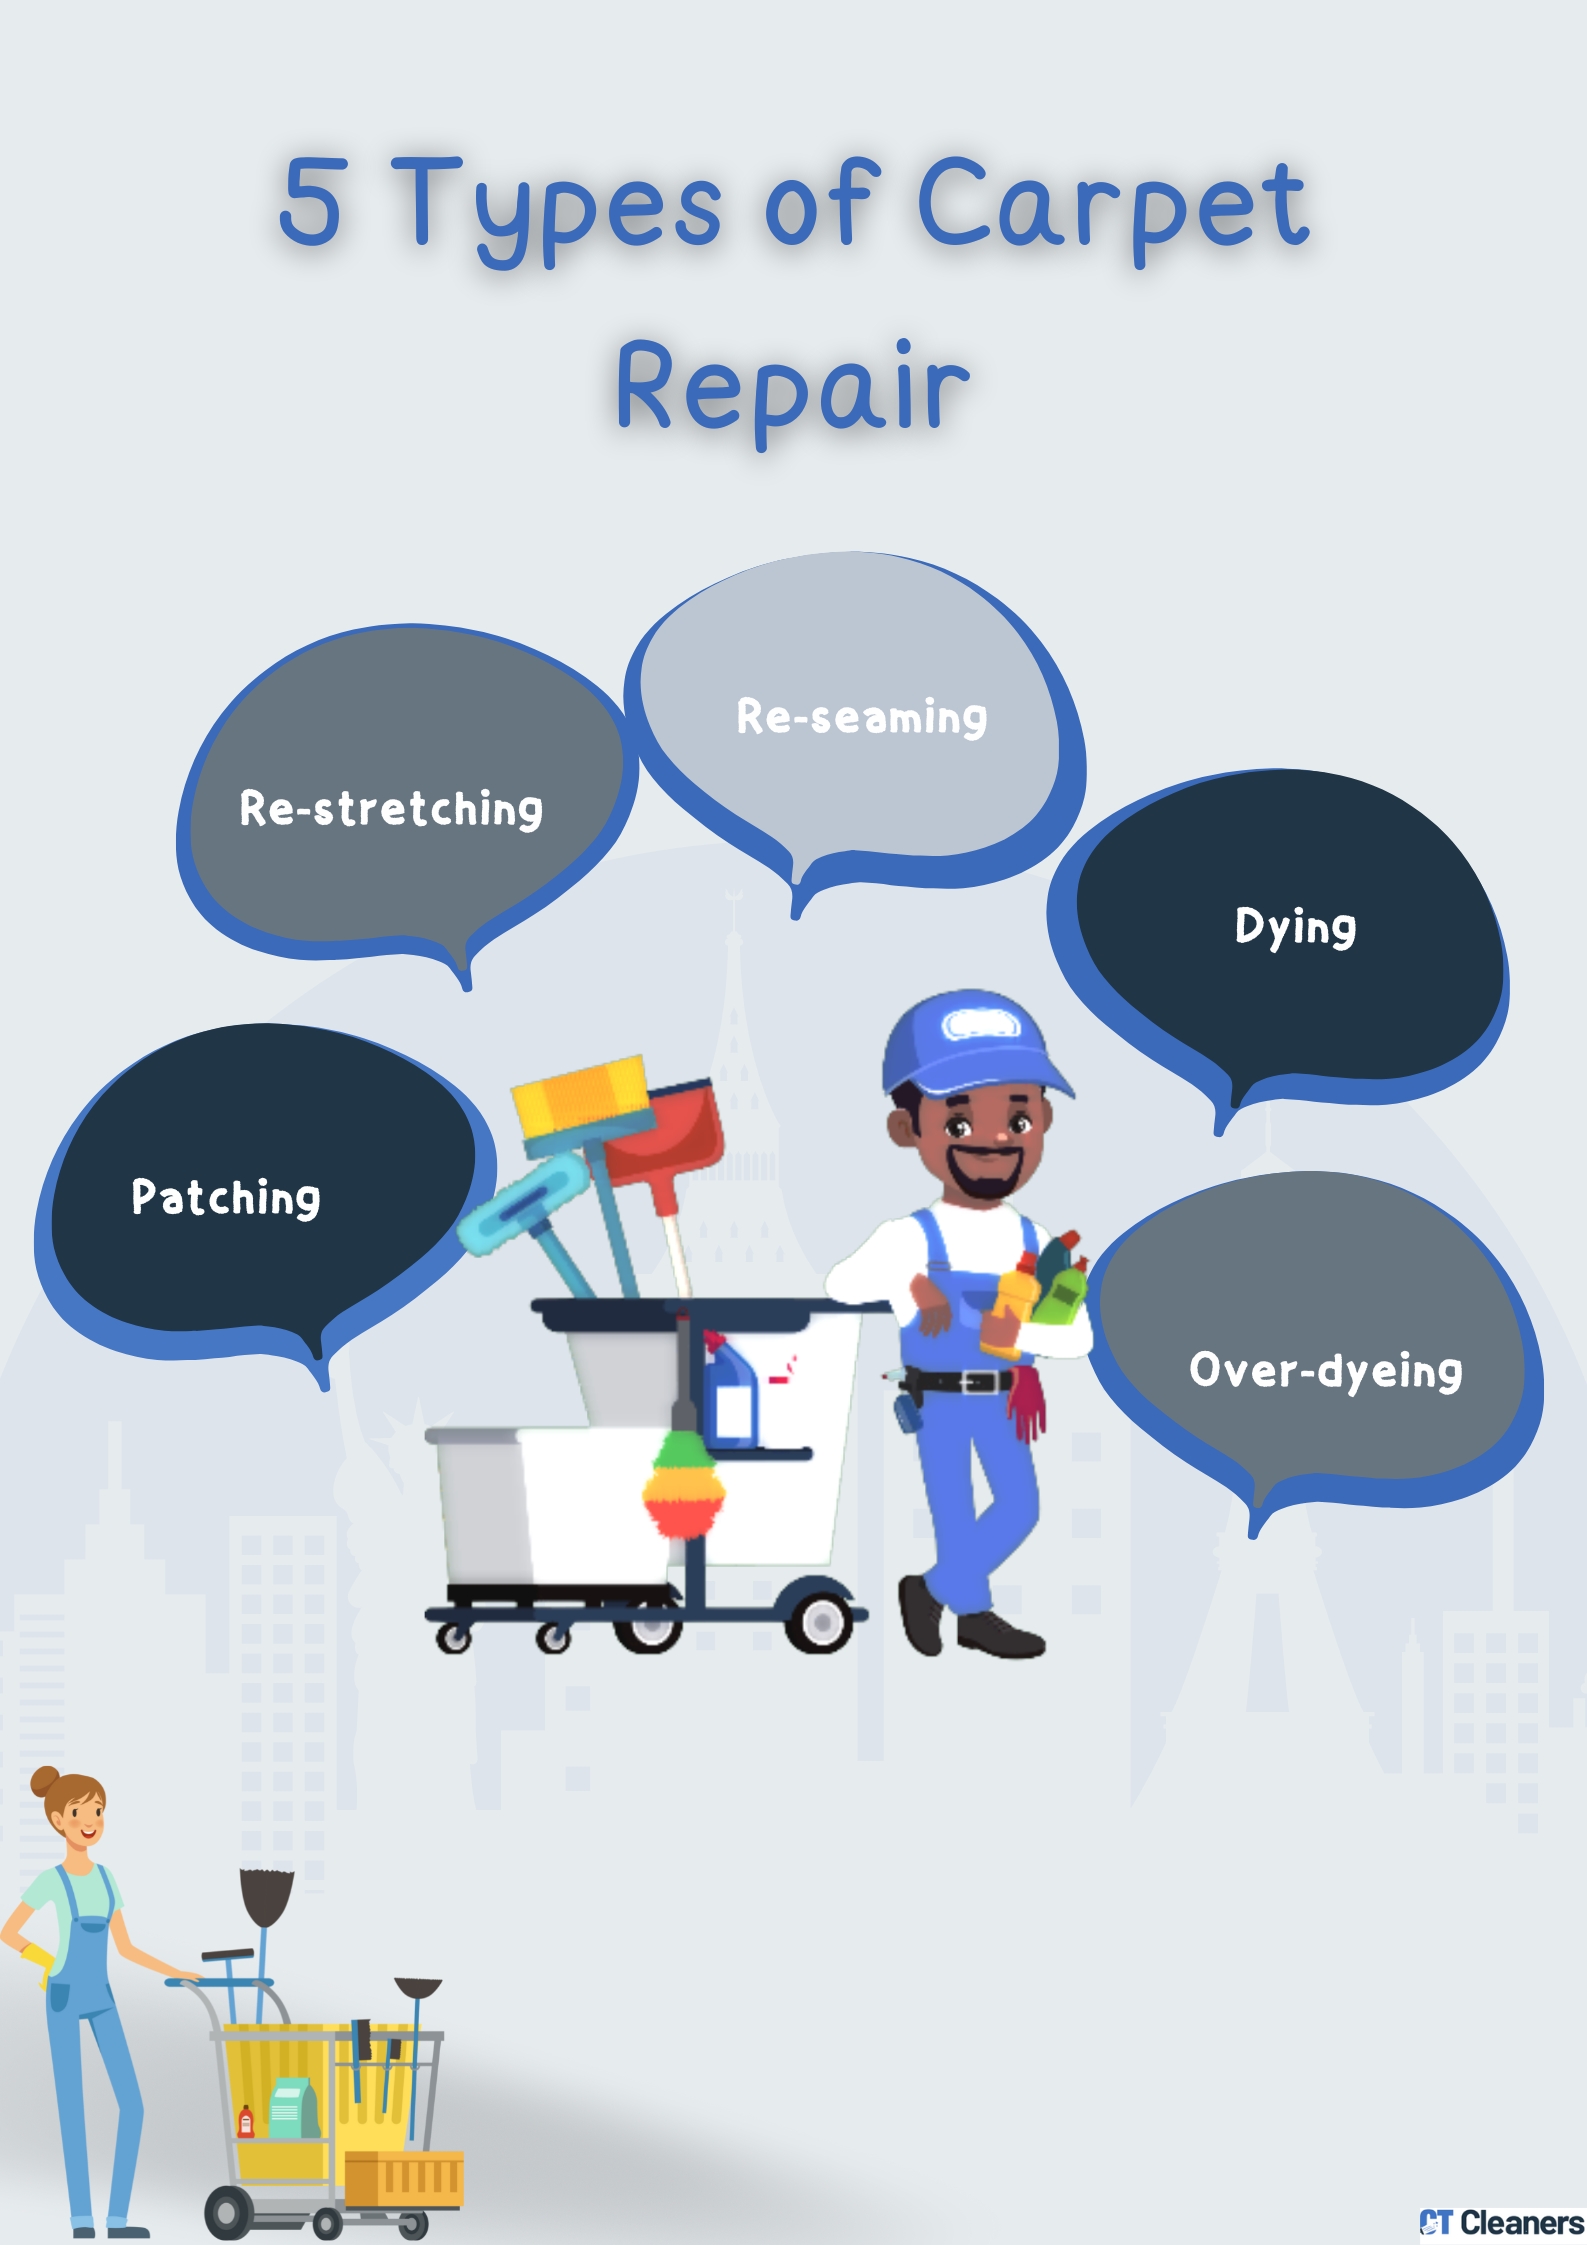 5 Types of Carpet Repair